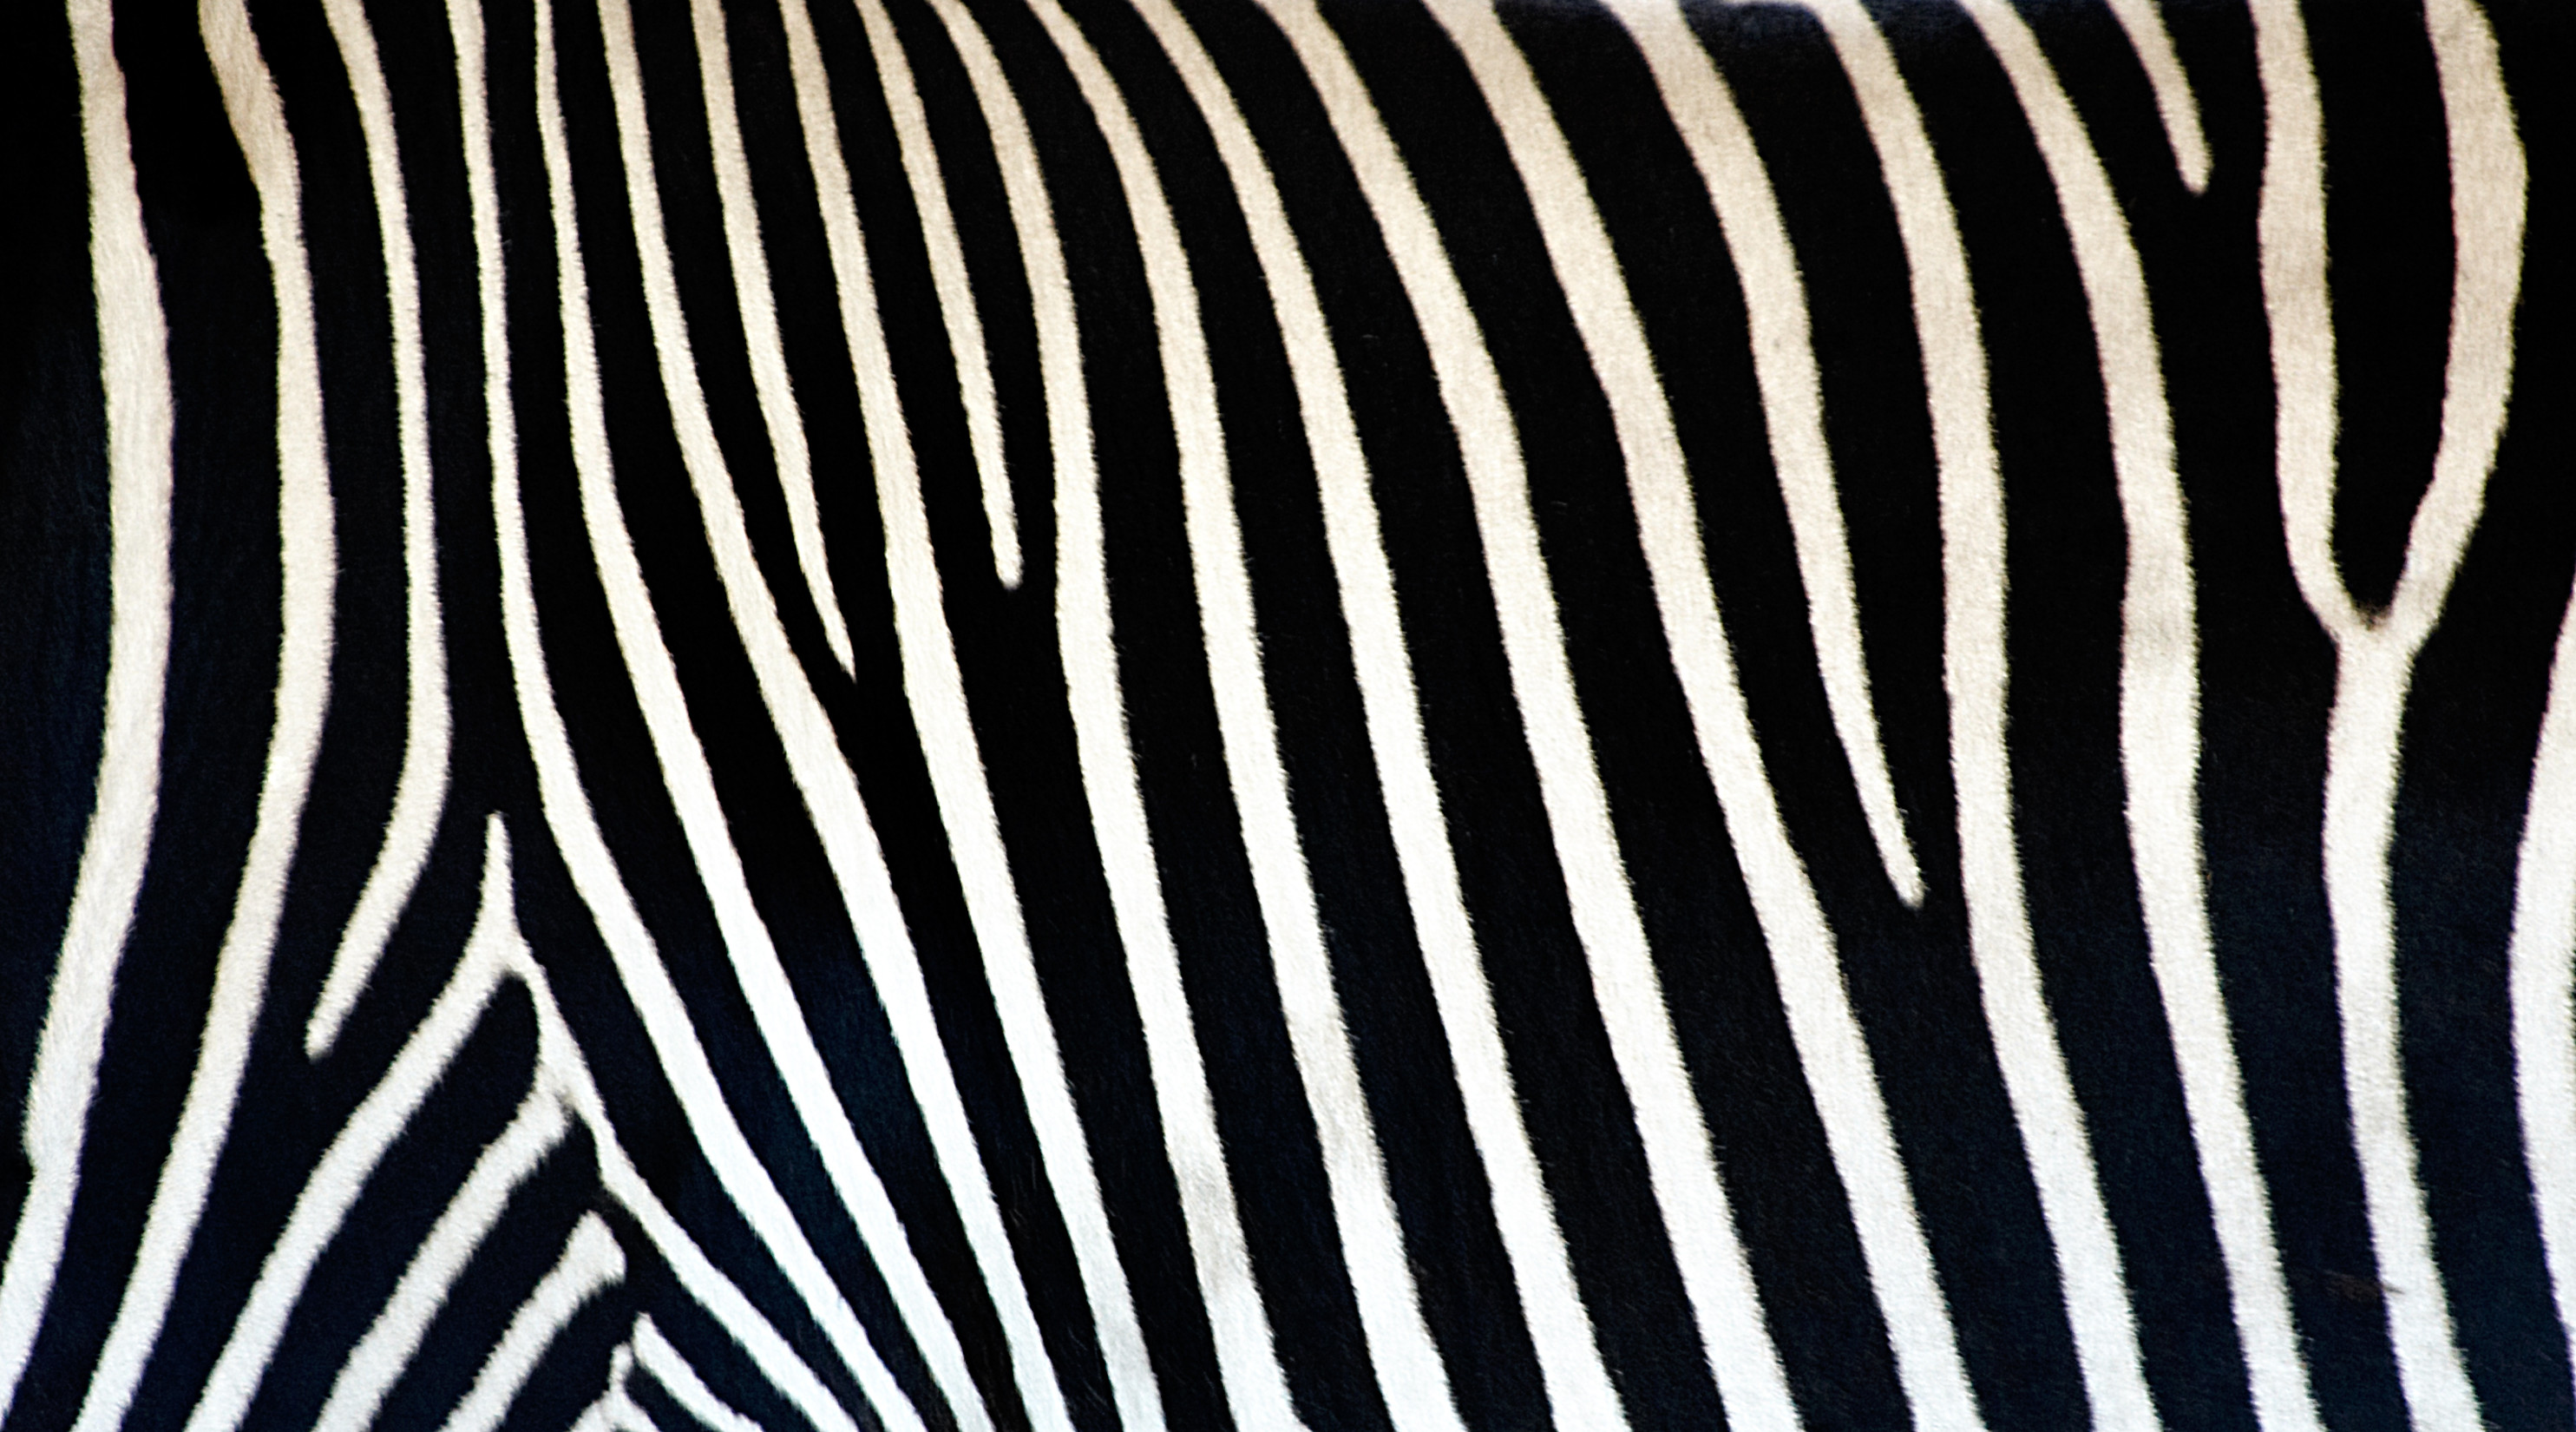 Free Zebra Print Wallpaper, Download Free Zebra Print Wallpaper png